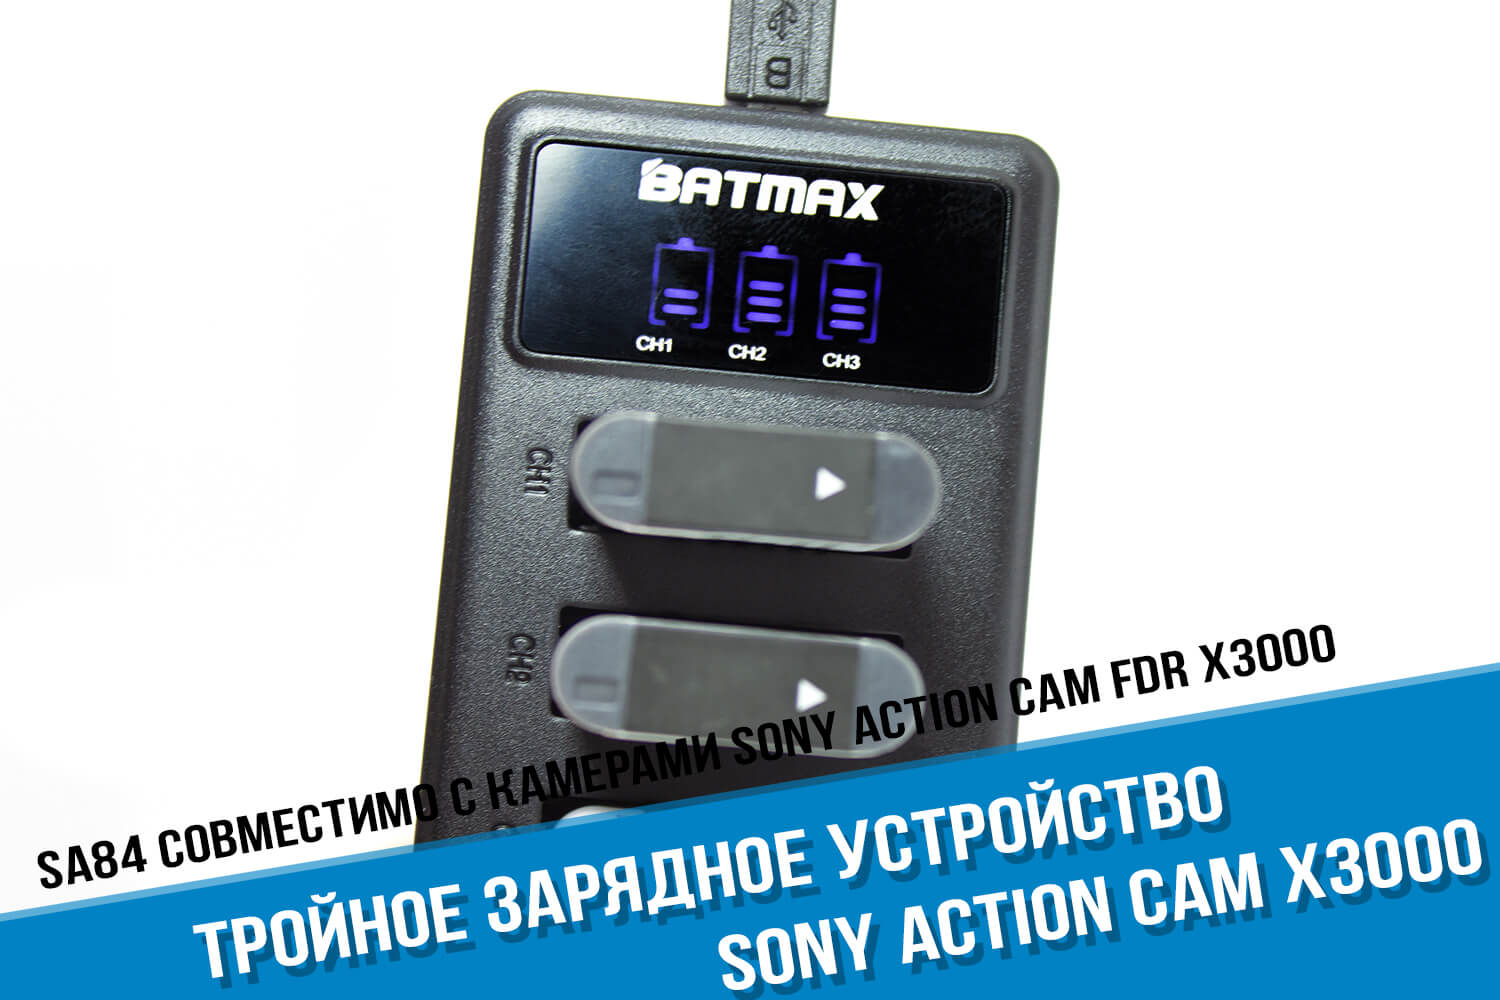 Зарядка для камеры Sony Action Cam на 3 аккумулятора